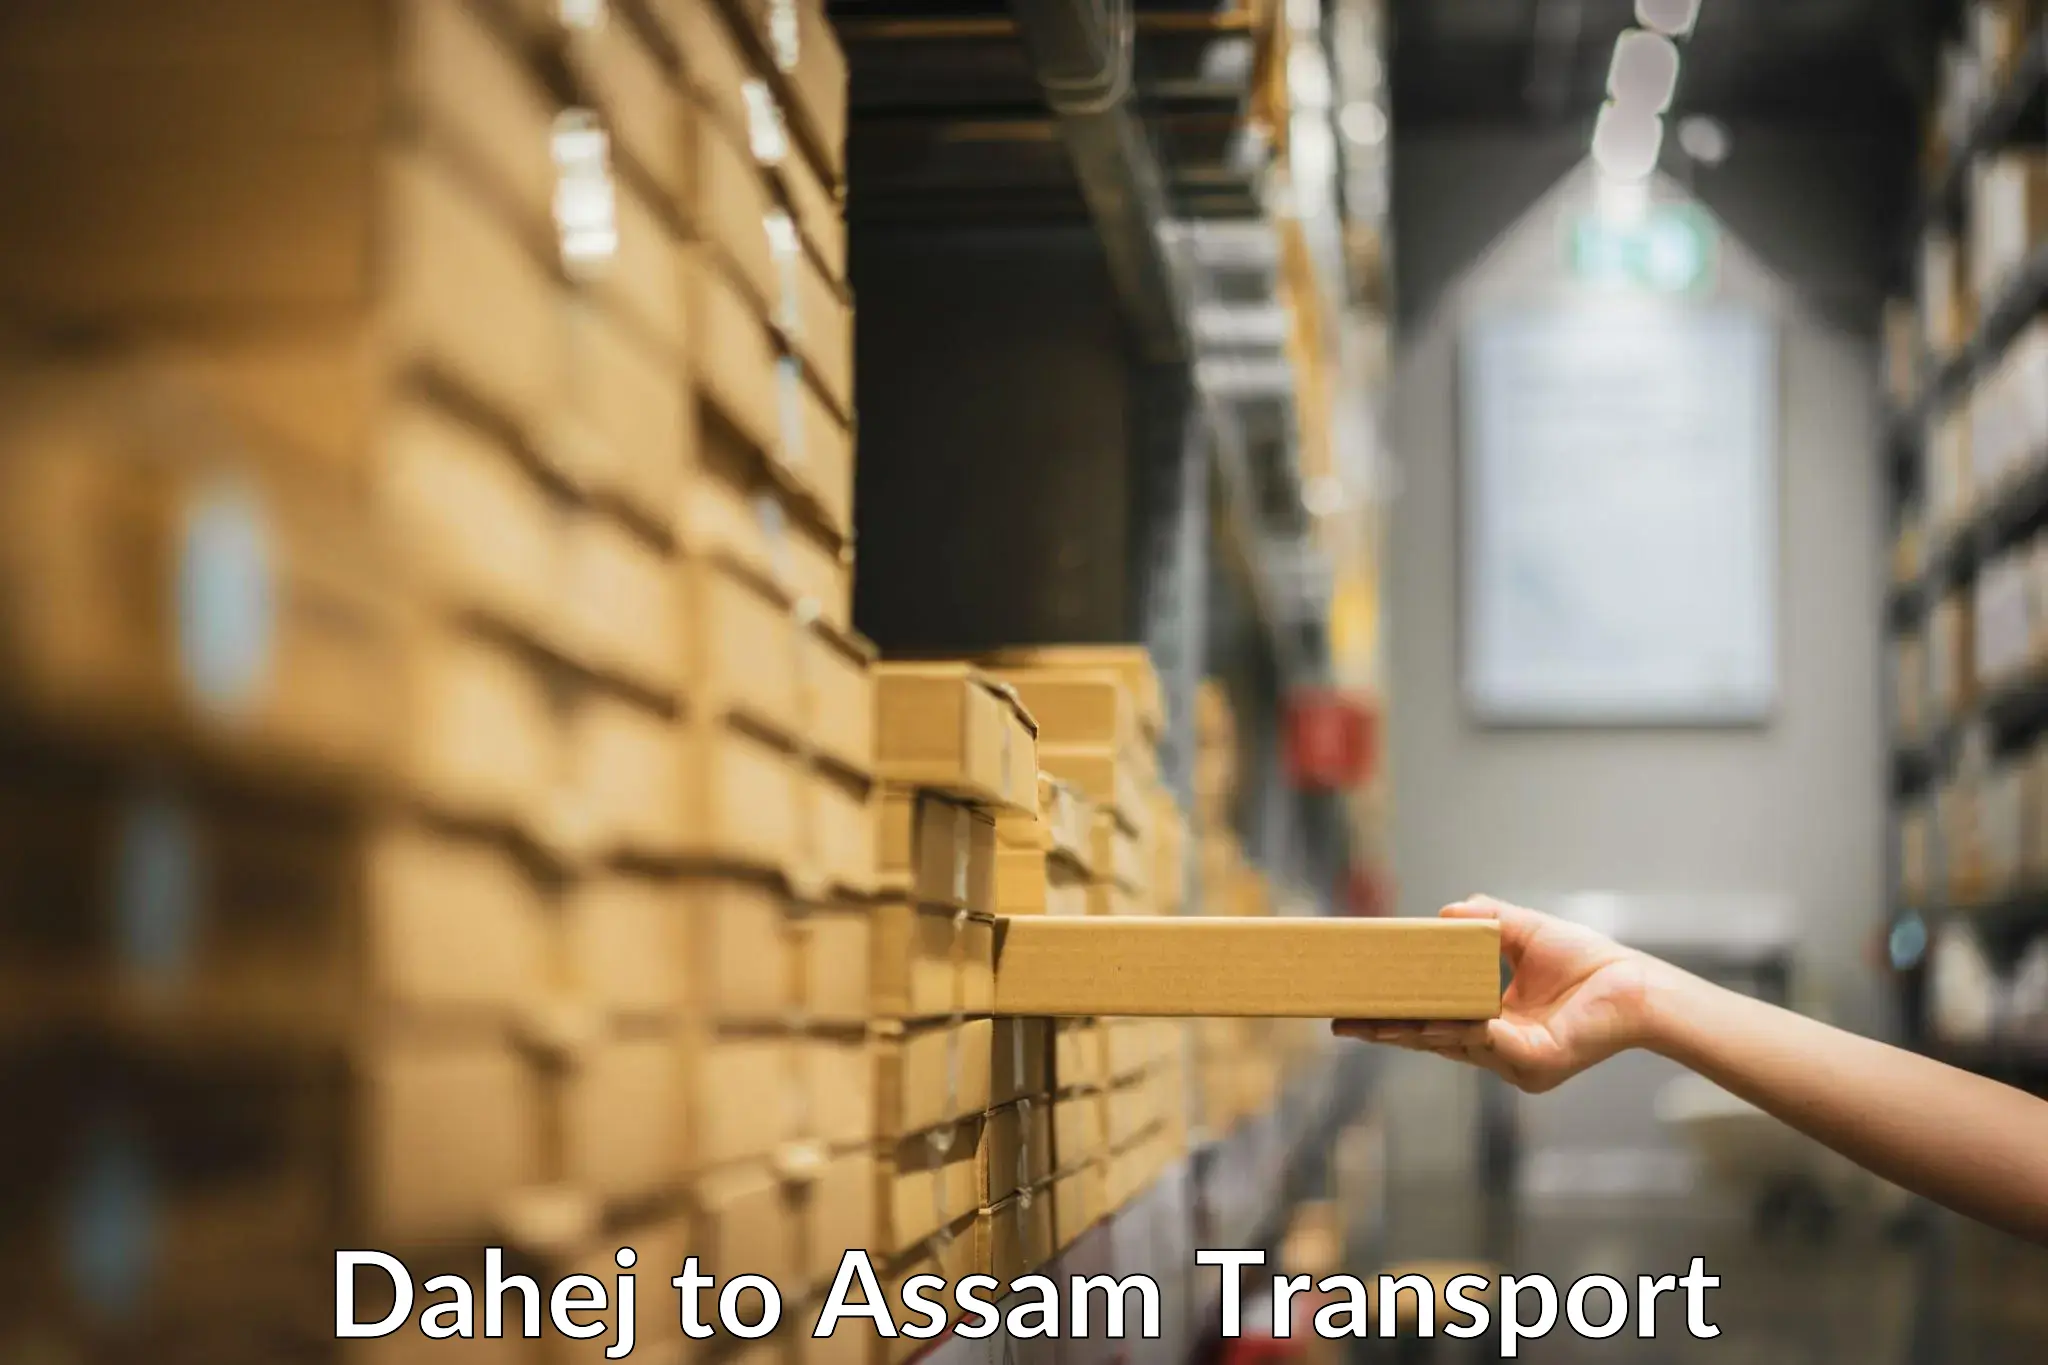 Pick up transport service Dahej to Assam